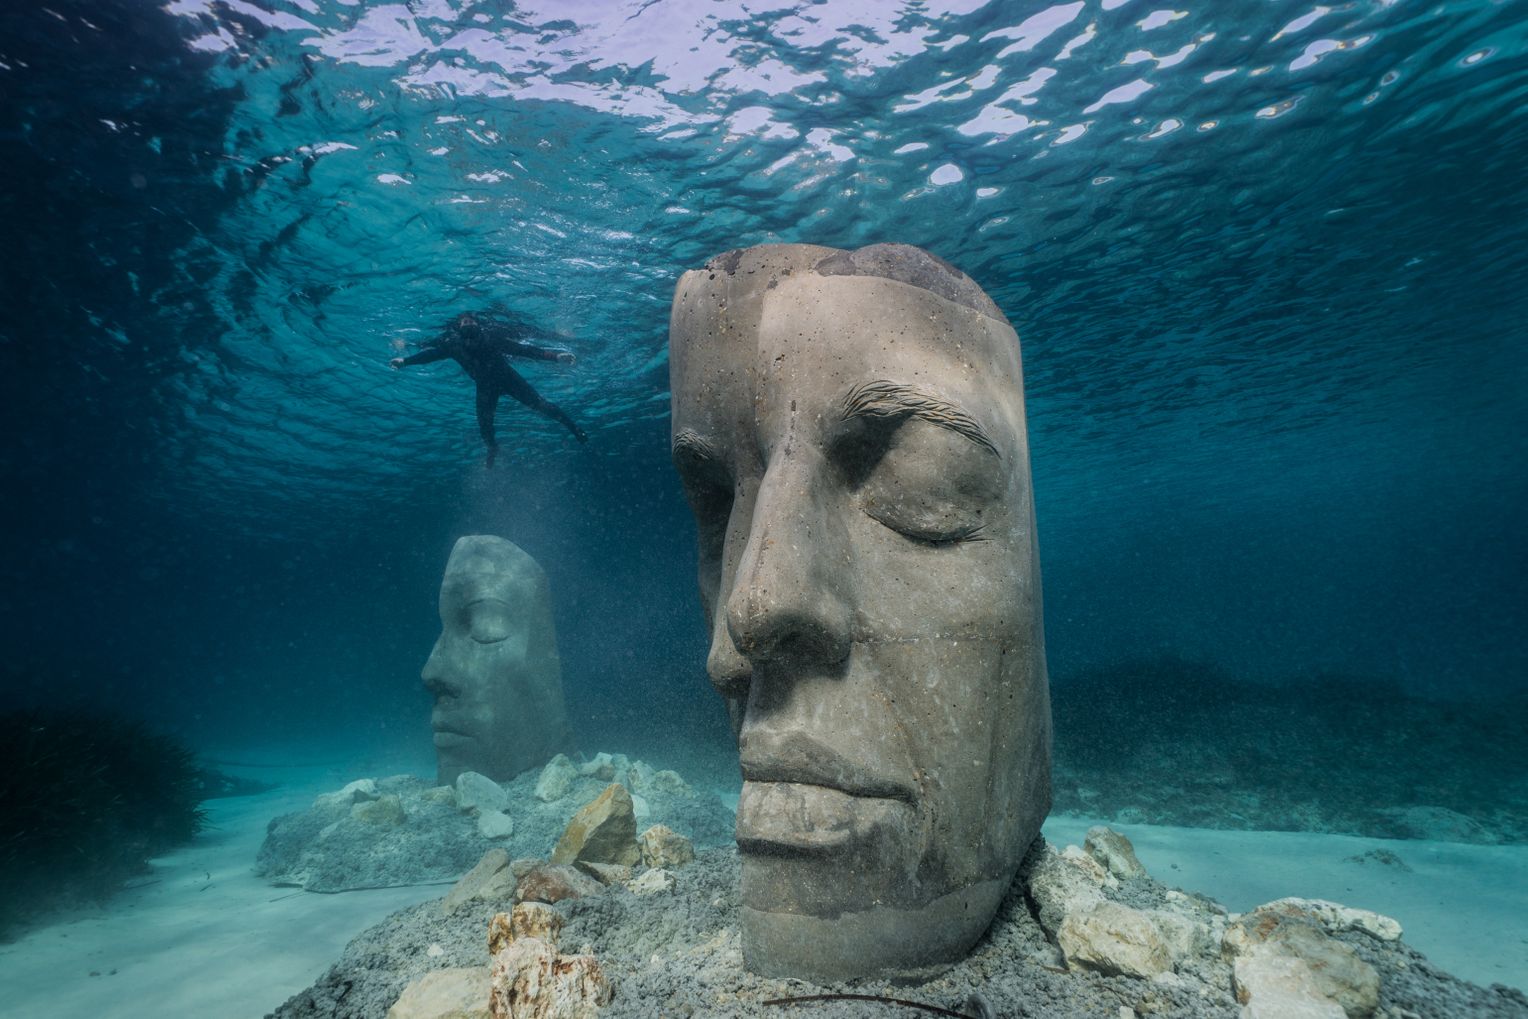 Das Unterwassermuseum von Jason deCaires Taylor weist auf den schlechten Zustand des Mittelmeeres hin. Foto: Jason deCaires Taylor